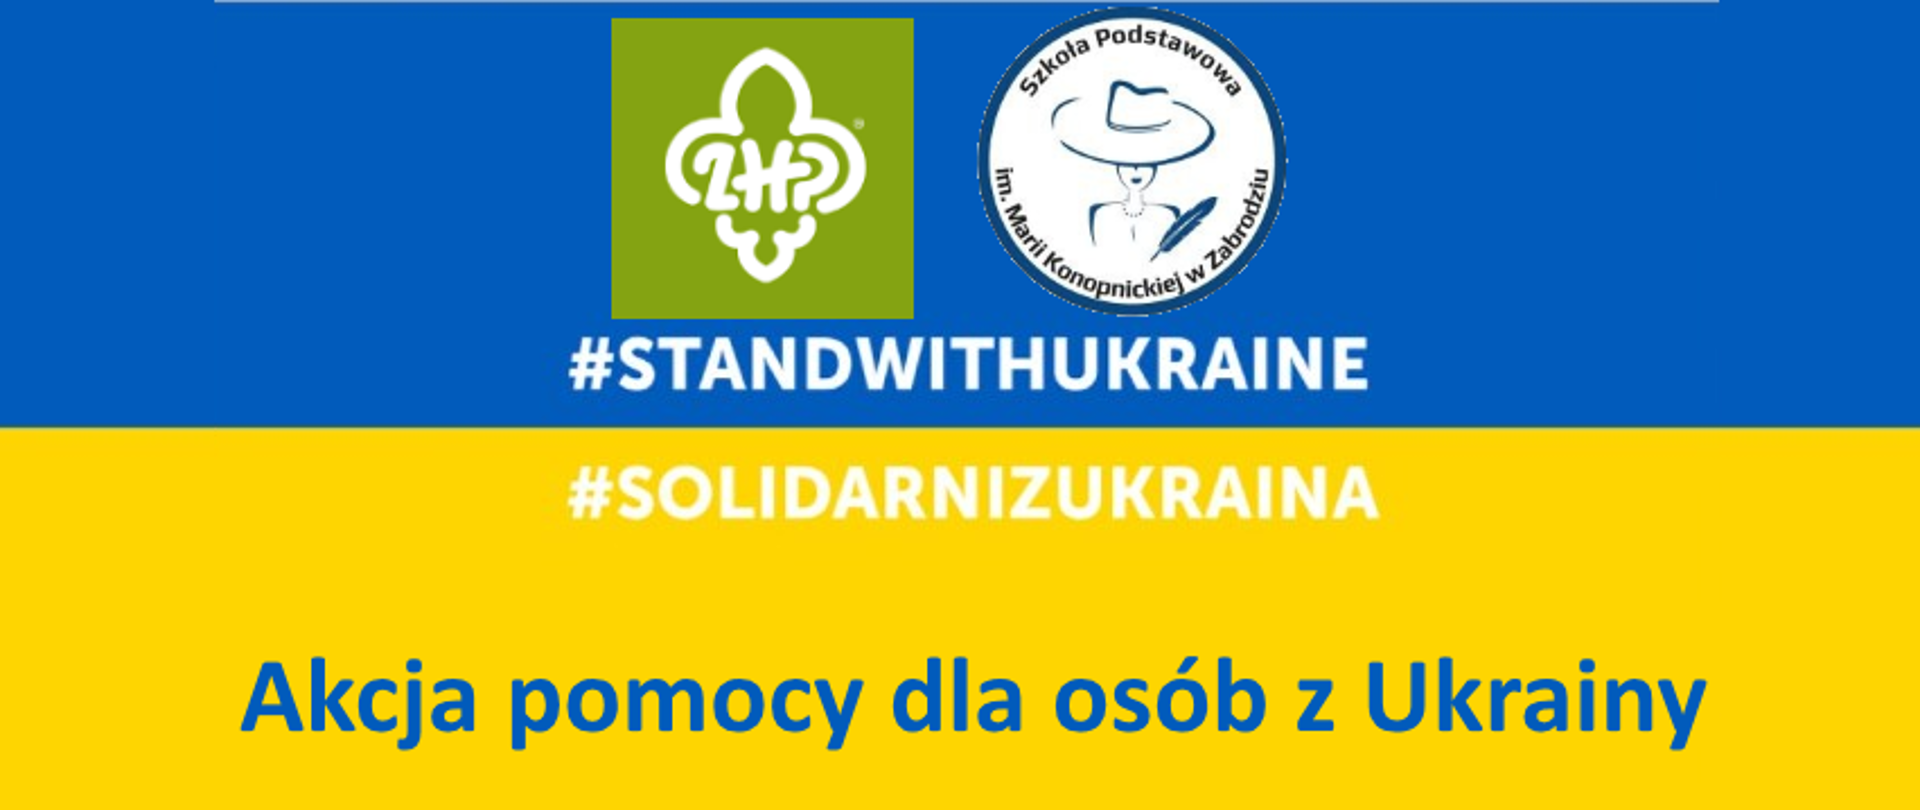 Akcja pomocy dla osób z Ukrainy